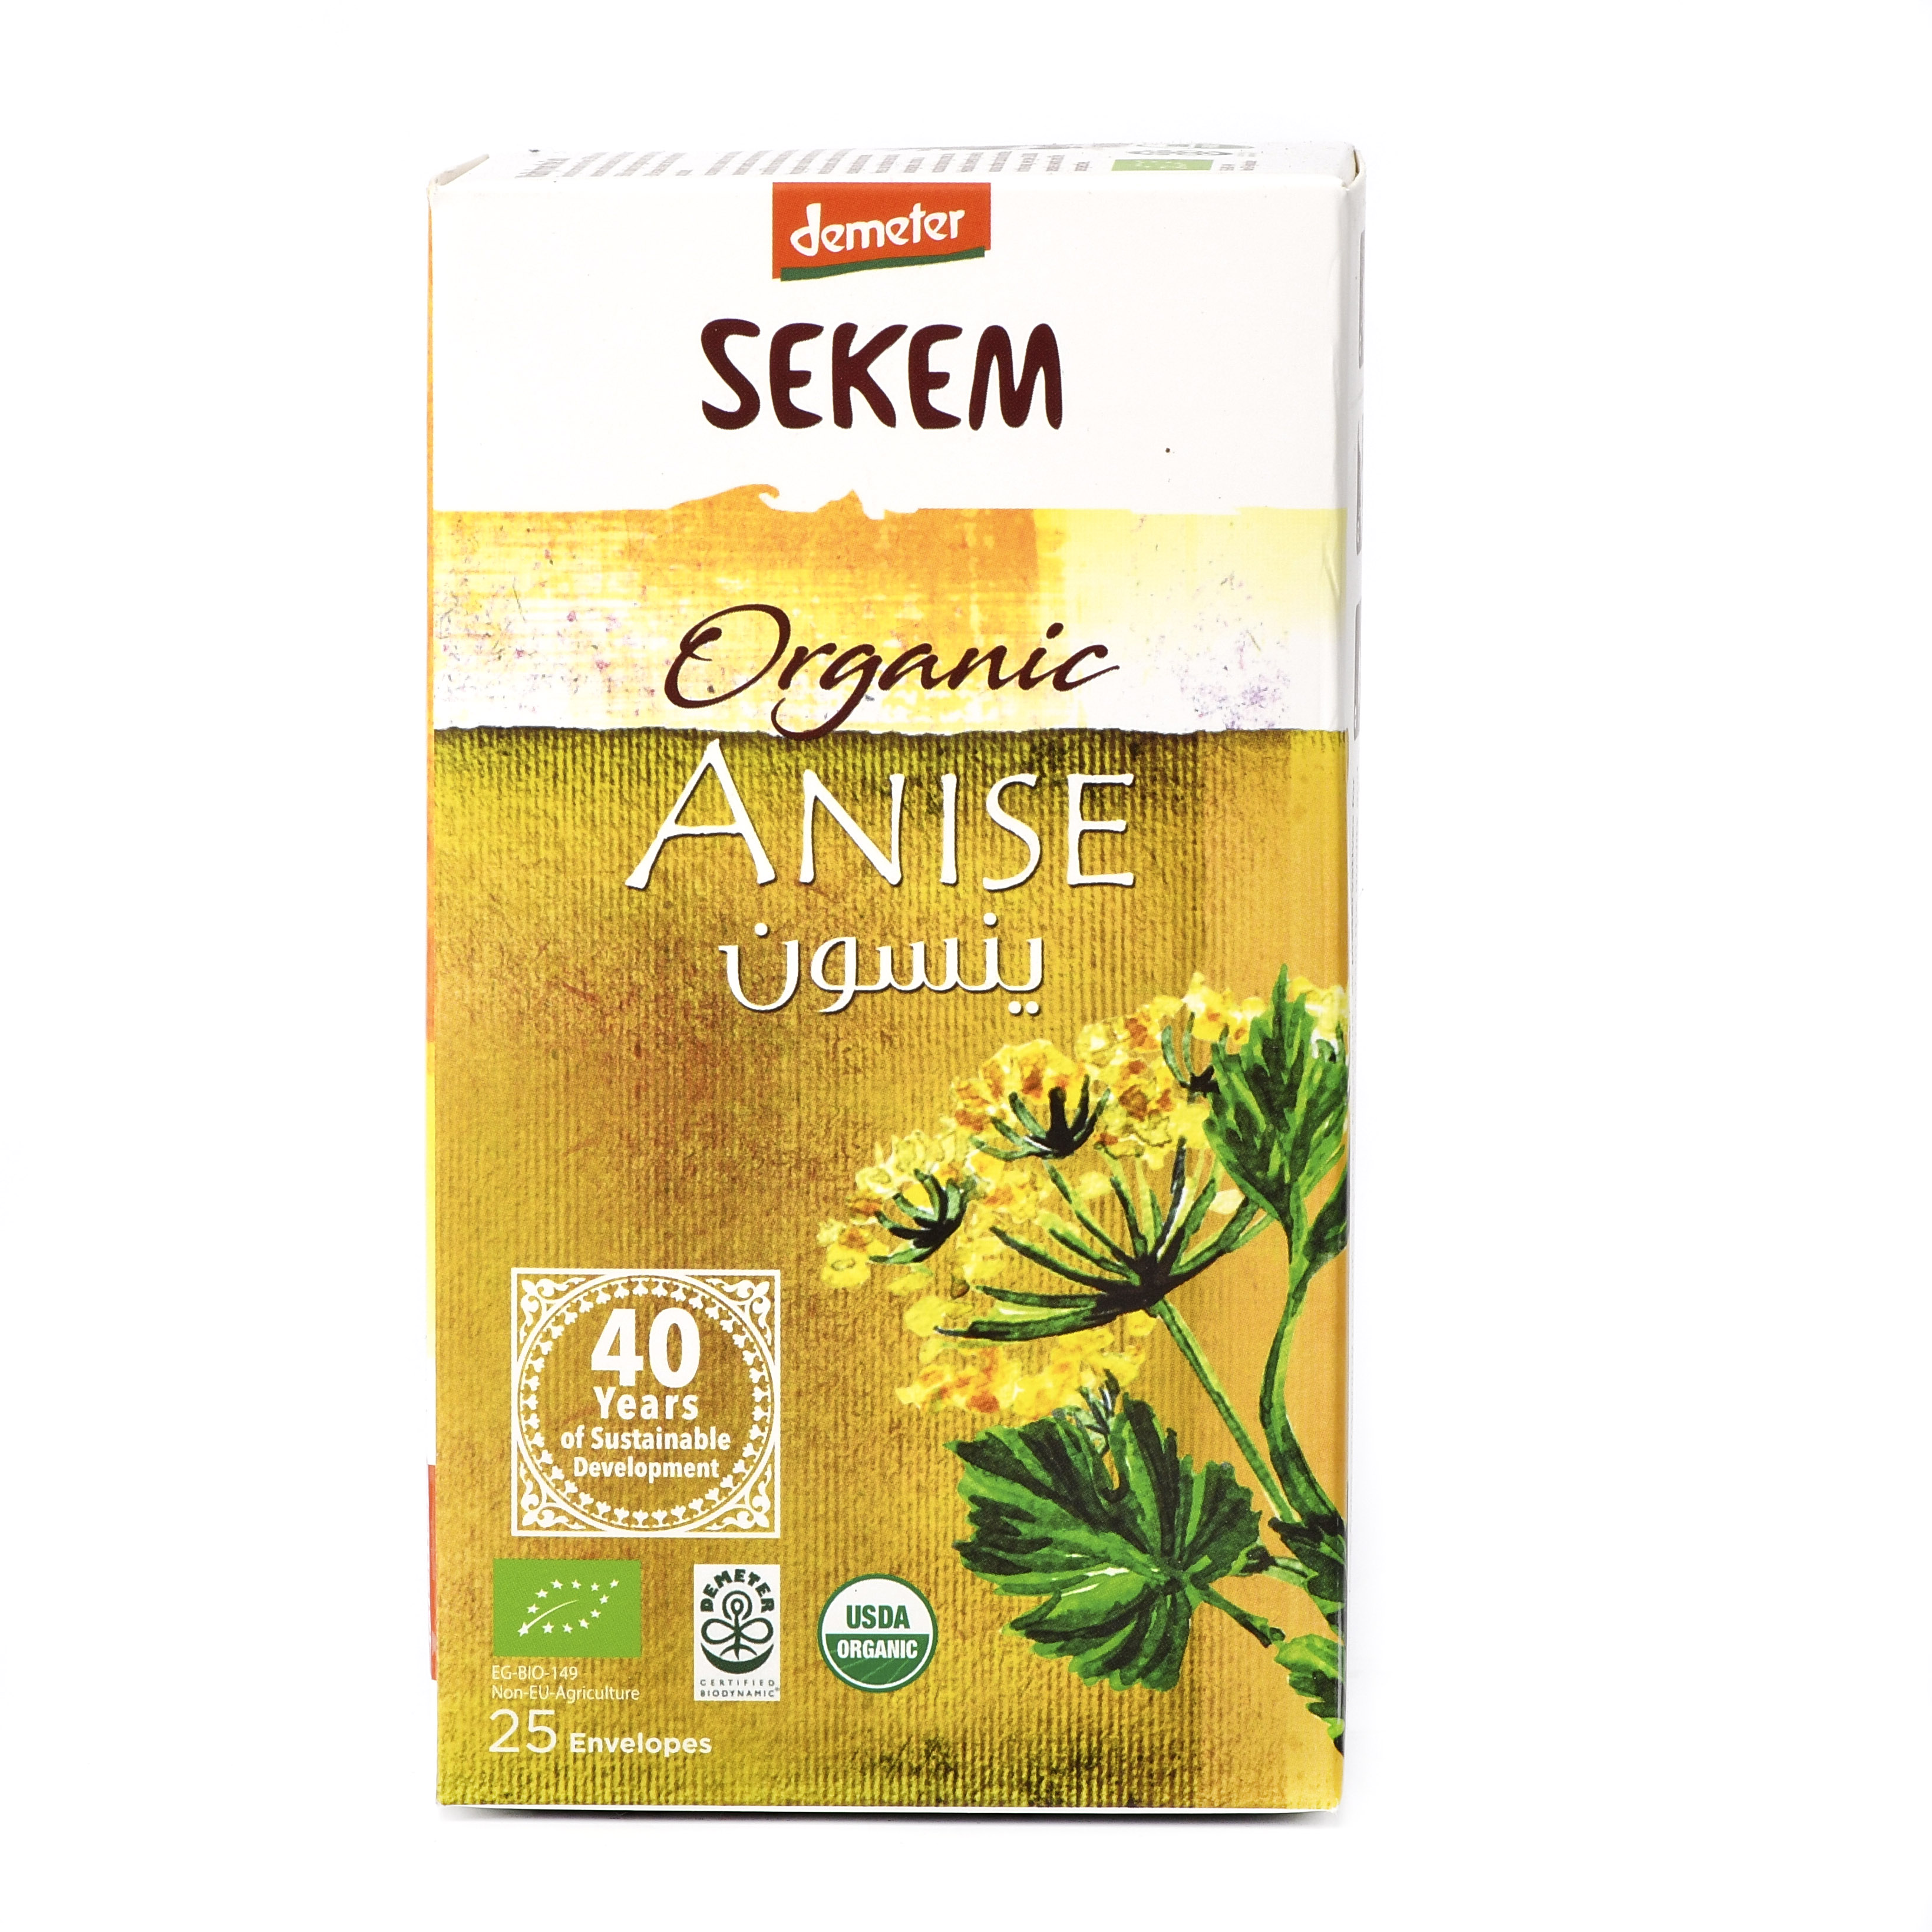 Органический анисовый чайный напиток SEKEM, Demeter - 50 г